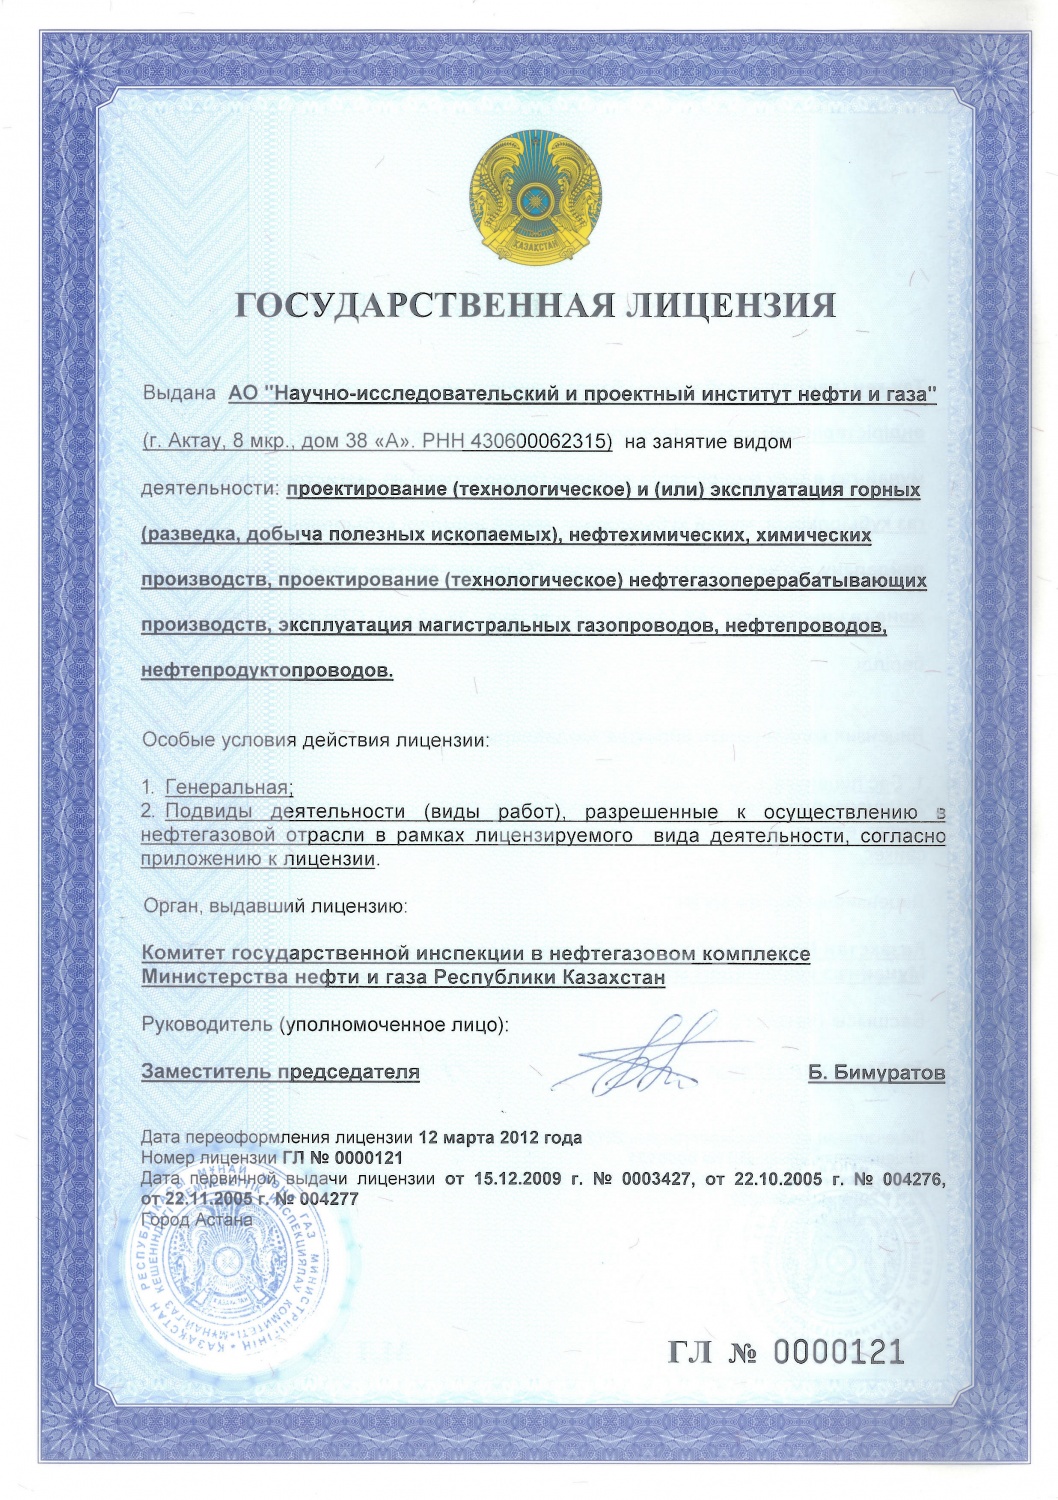 Государственная генеральная лицензия Министерства нефти и газа Республики Казахстан. Комитет государственной инспекции в нефтегазовом комплексе № 0000121 переоформлена 28 декабря 2012 года